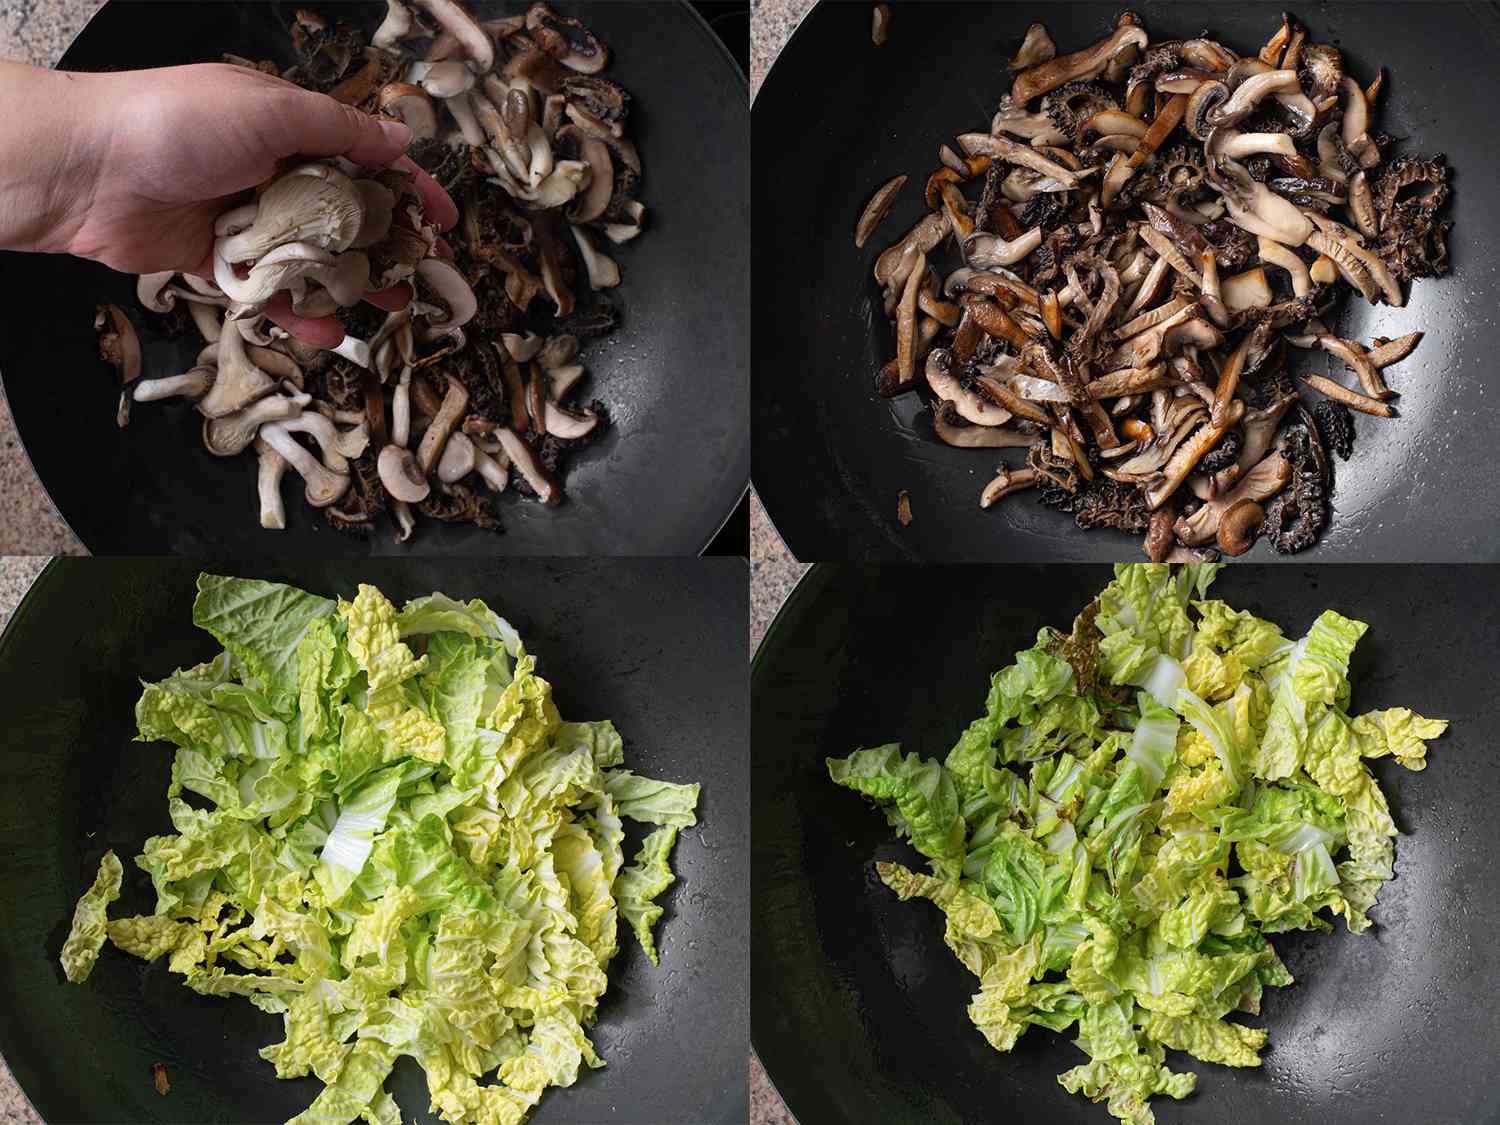 4个成像拼贴。左上角的图像显示了排水和新鲜的蘑菇被添加到一个锅。右上角的图片显示的是蘑菇,现在在锅里炒在一起。左下角的图片显示的是切白菜添加到锅中。现在右下角的图像显示了白菜轻轻在锅里炒。